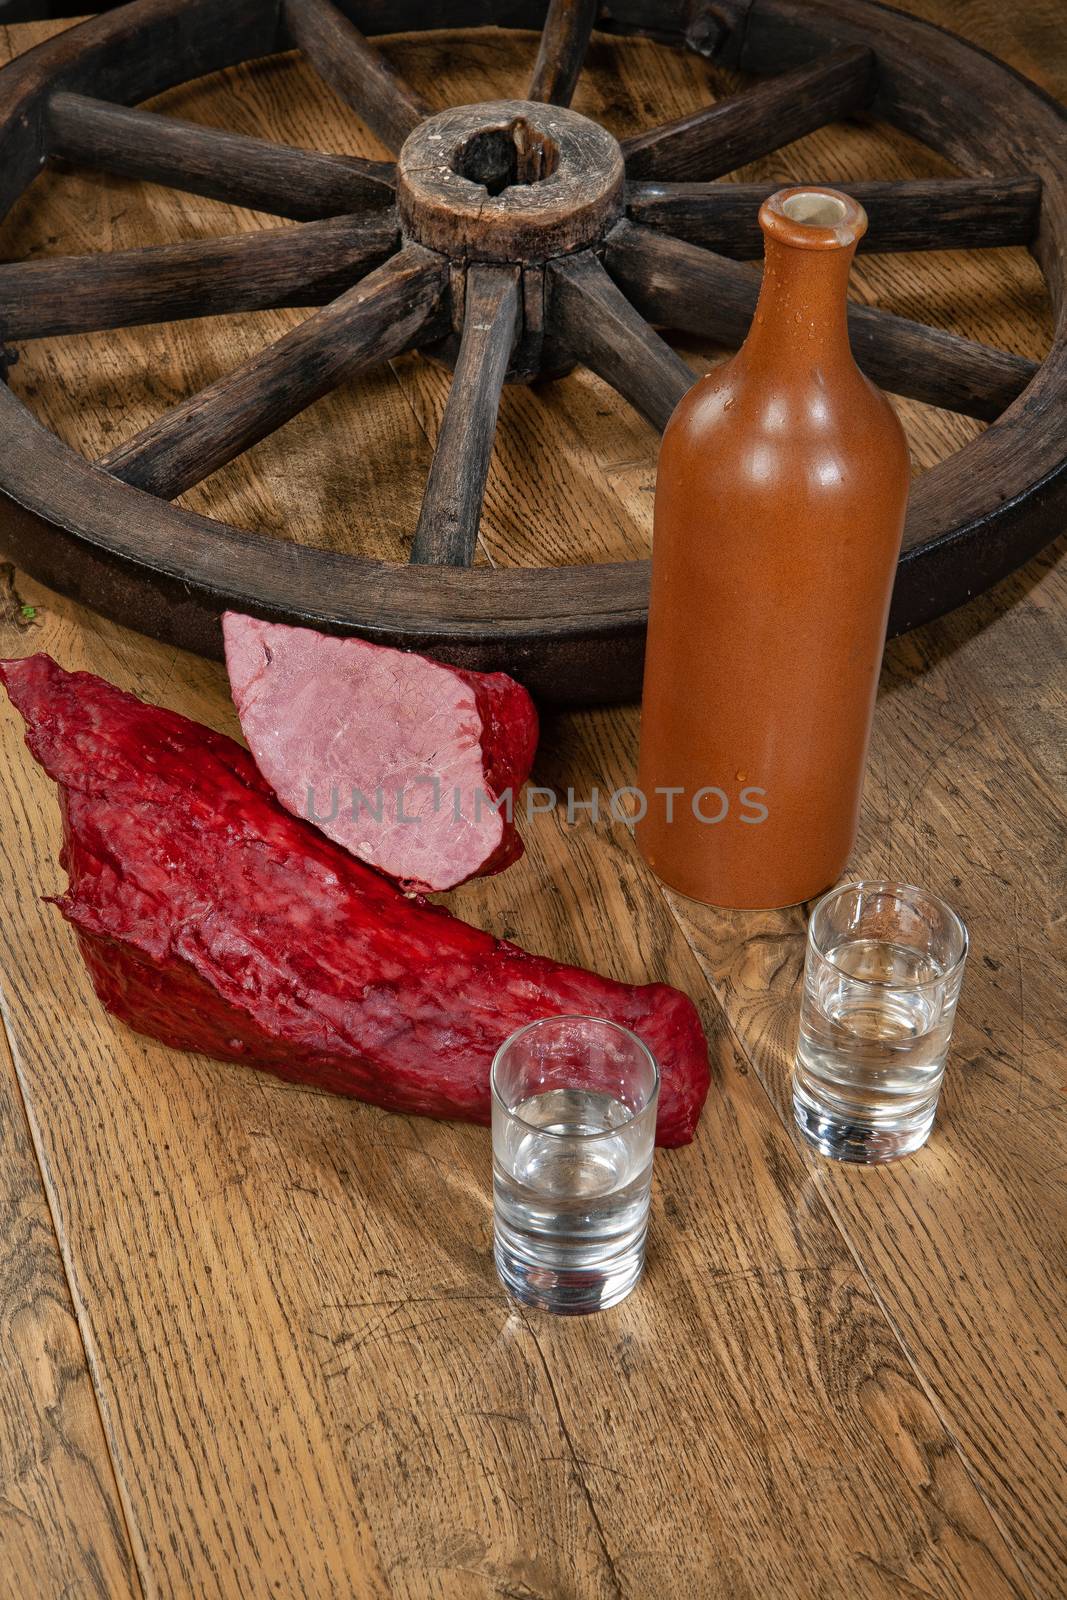 Ham sausage, ceramic bottle and glasses of vodka on a wooden desk